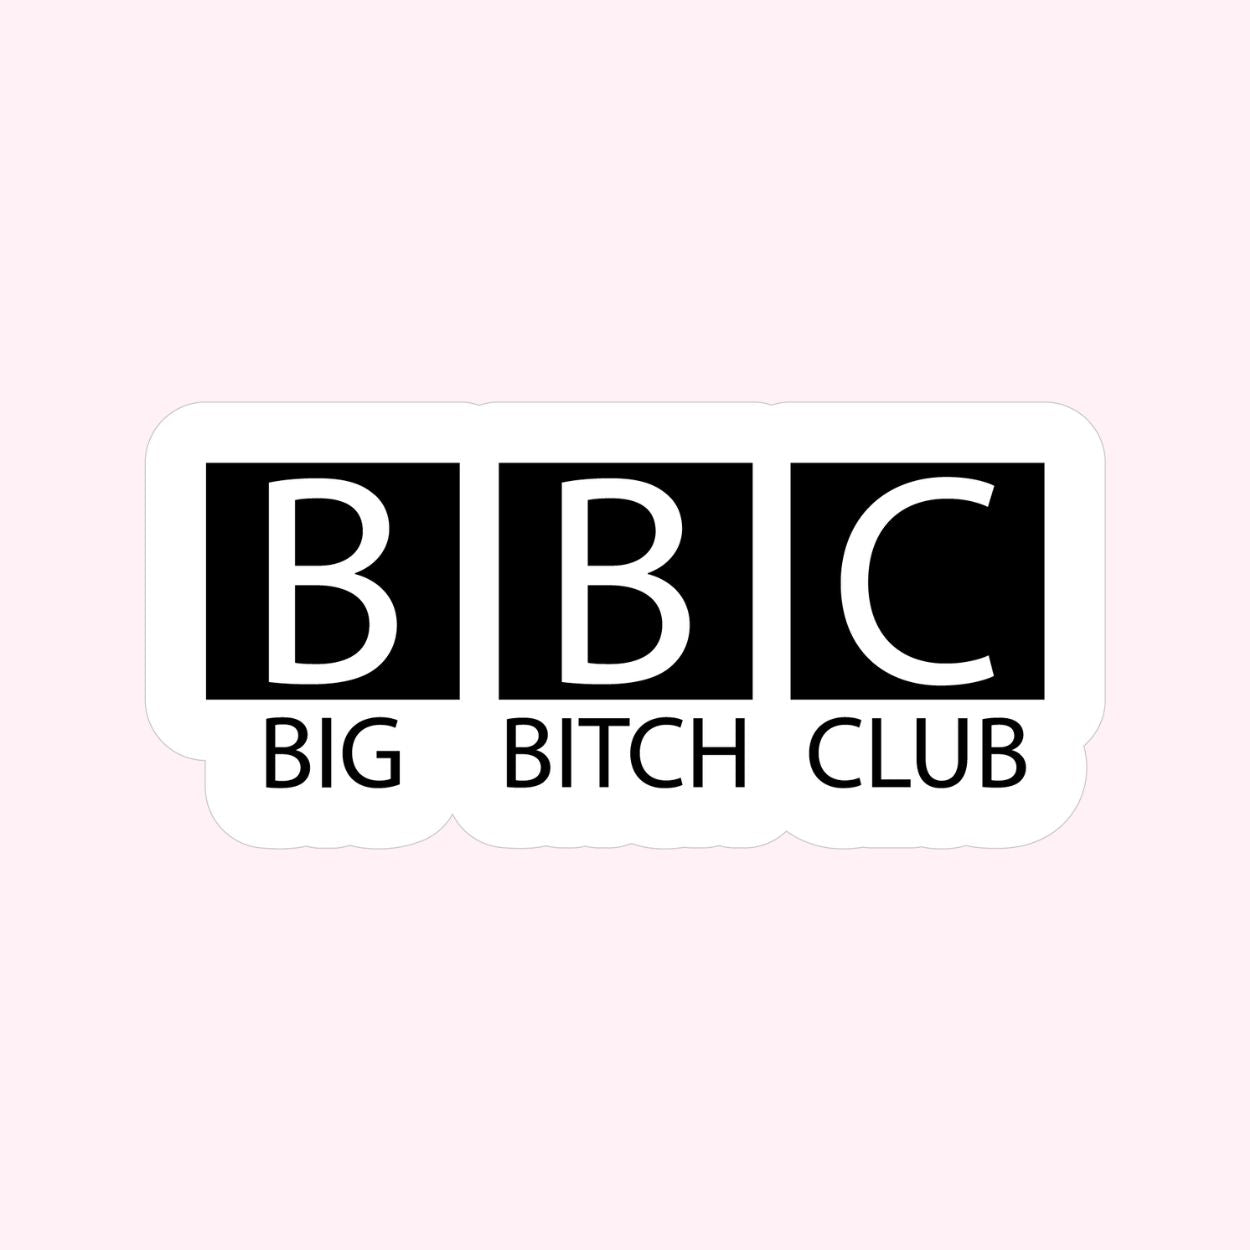 BBC: Bitch Bitch Club Sticker - Doggy Style Pet Products